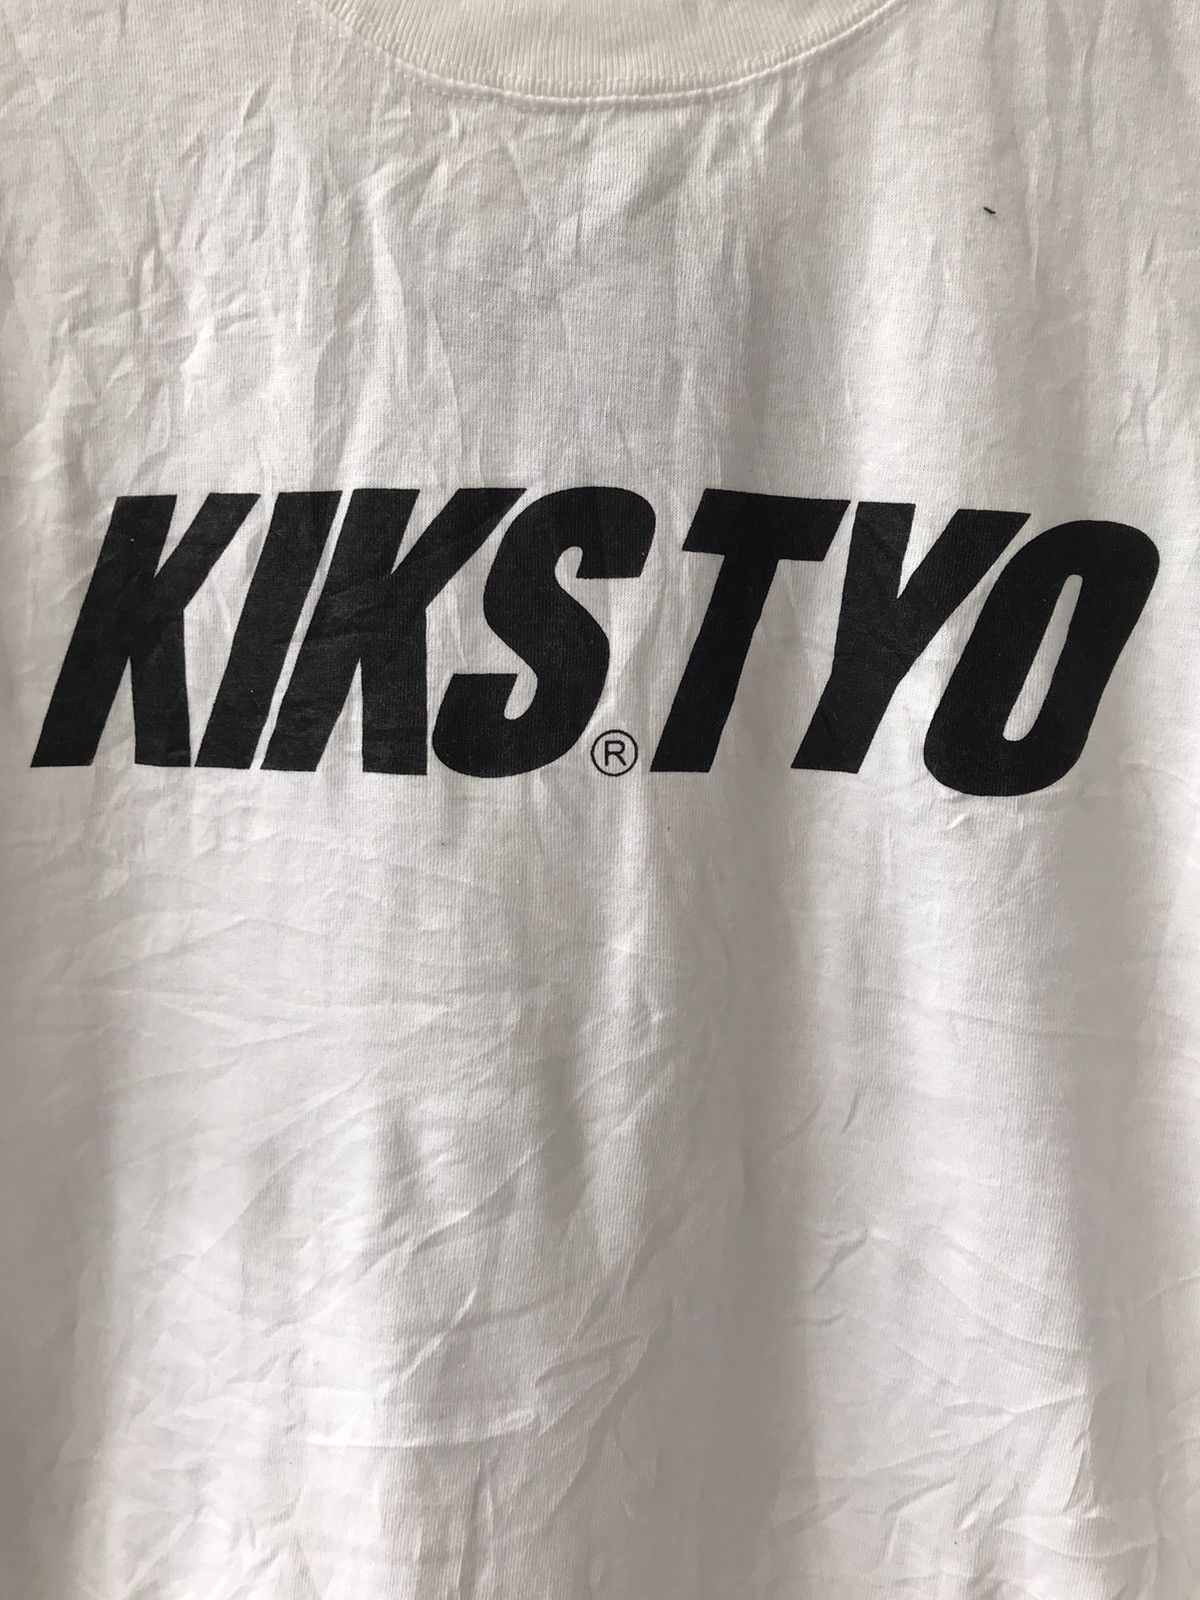 Kiks Tyo KIKS TYO Japanese Brand Spell Out Streetwear Shinichi Izaki Size US M / EU 48-50 / 2 - 2 Preview